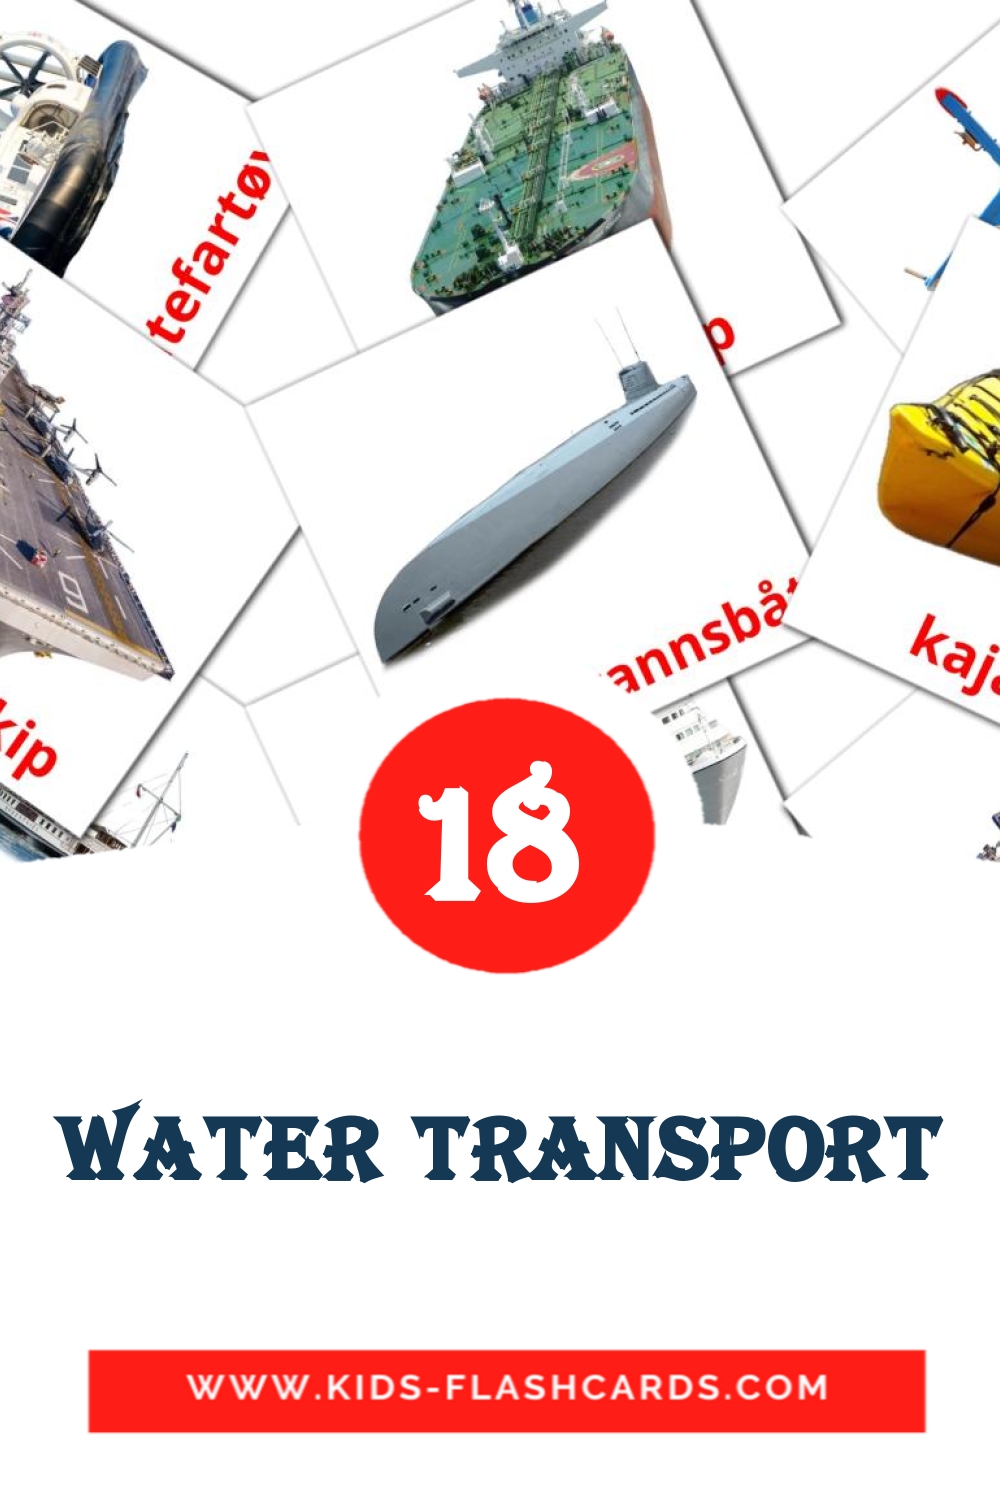 18 tarjetas didacticas de Water transport para el jardín de infancia en noruego